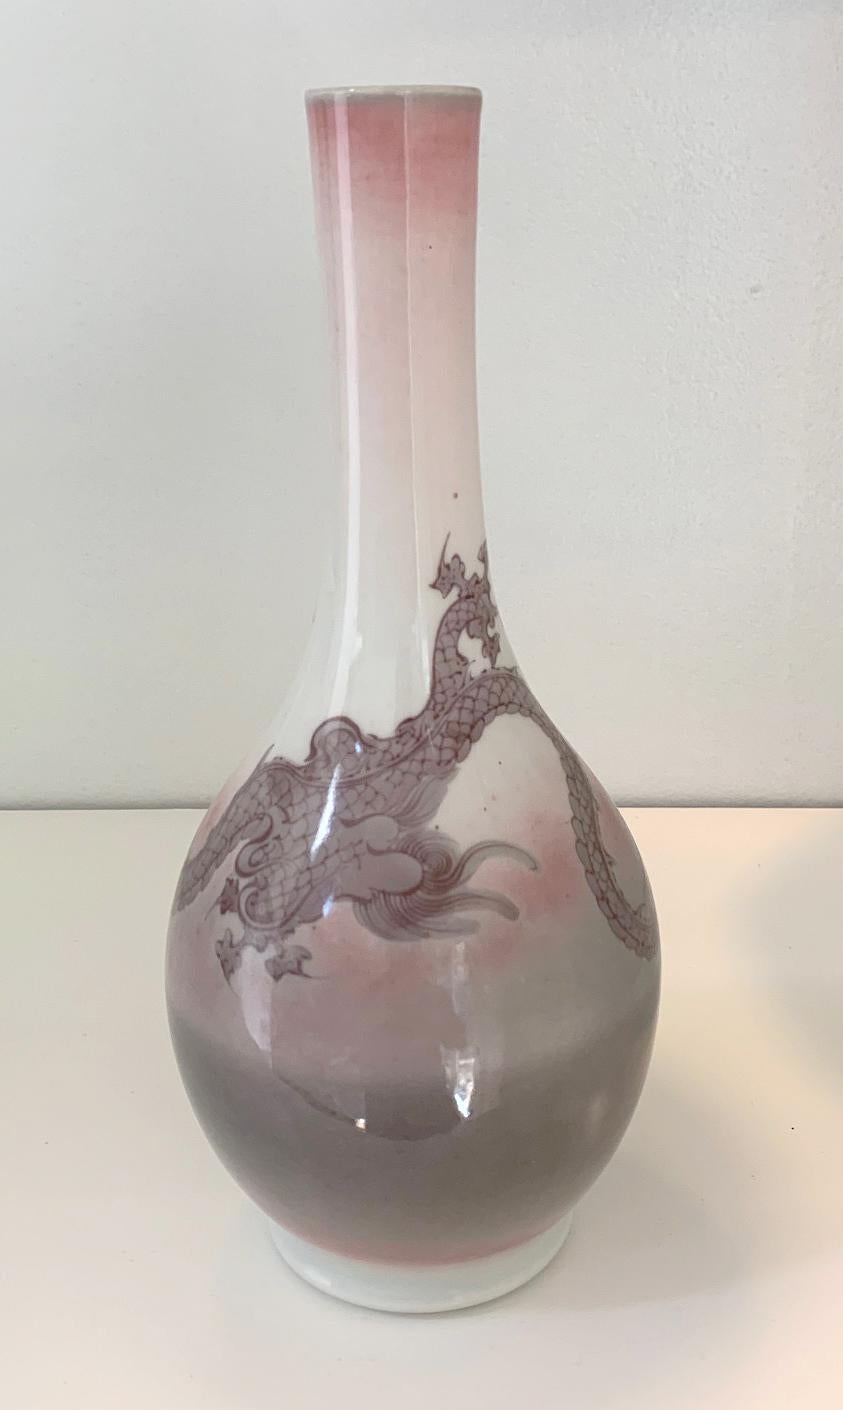 Porzellanvase mit Drachenmotiv des kaiserlichen japanischen Töpfers Makuzu Kozan (1842-1916), um 1900. Die Vase stammt aus der frühen Phase der Unterglasurmalerei in der späten Meiji-Ära. Die Oberfläche der Vase in klassischer, länglicher